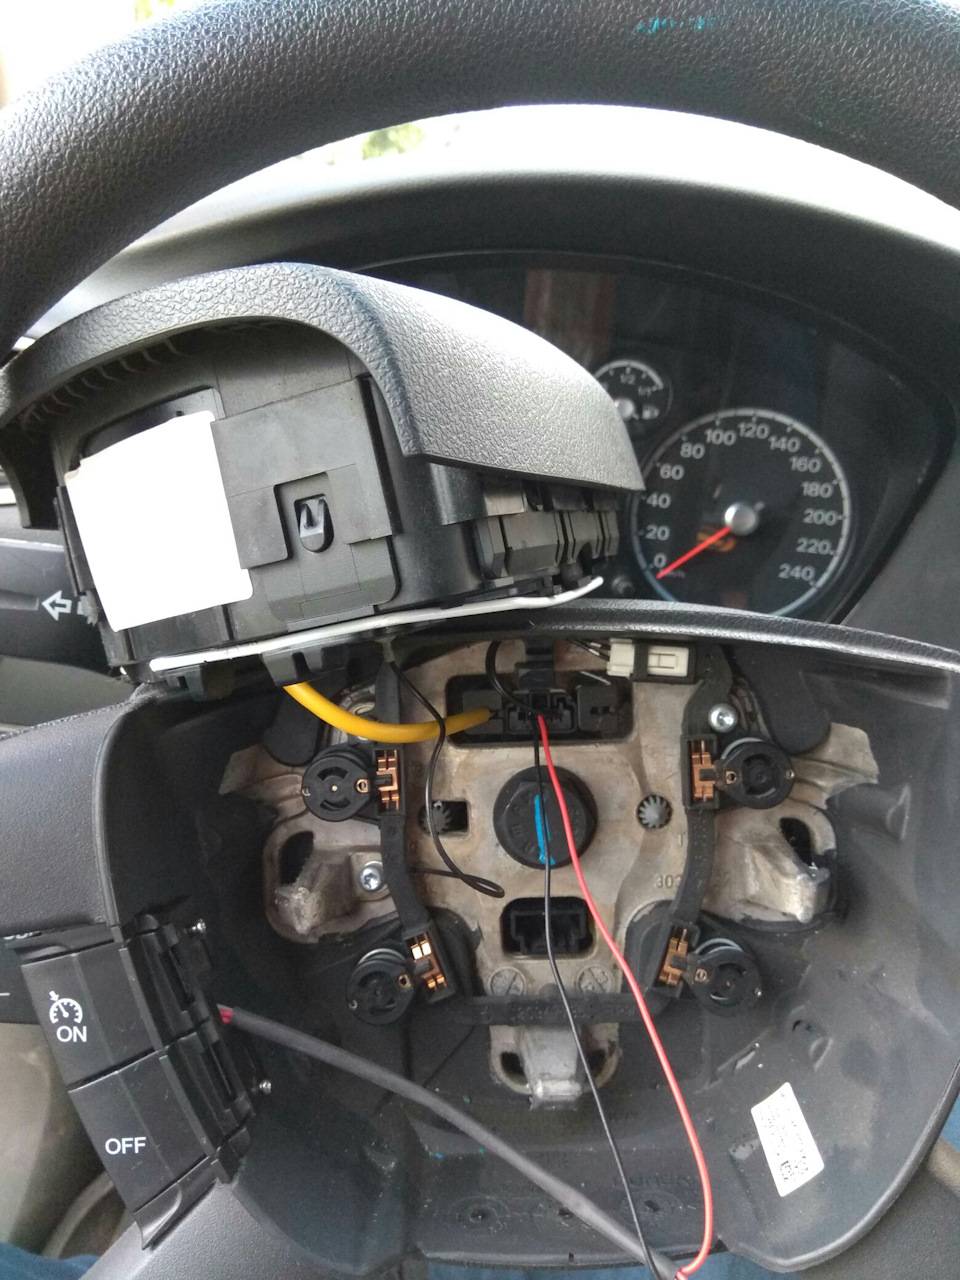 Установка круиз контроля форд фокус 2 - автомобильному мастеру